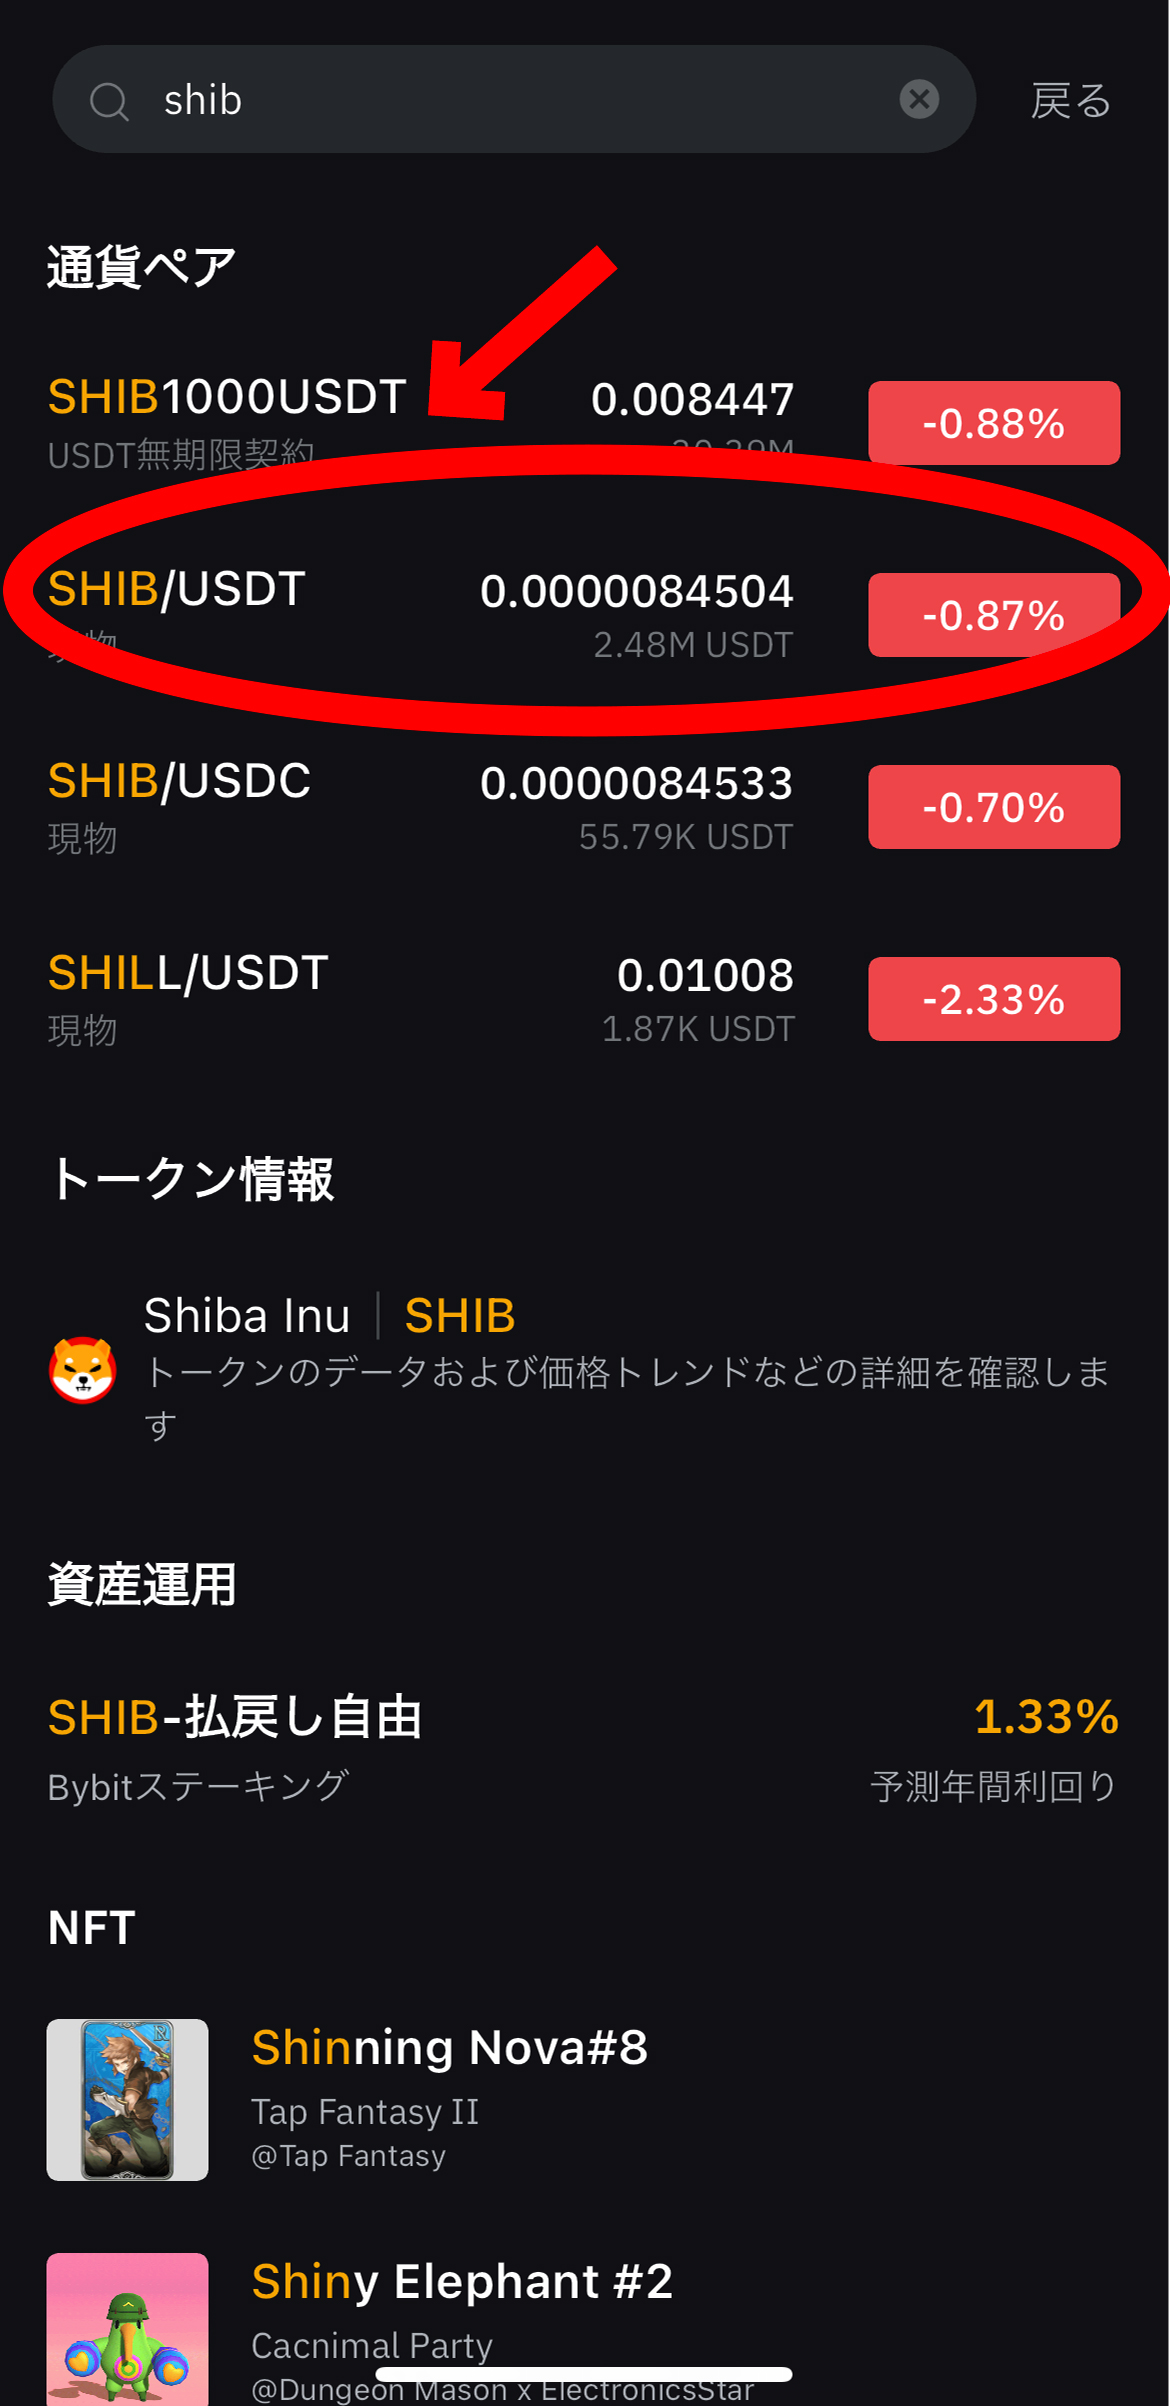 仮想通貨 柴犬コイン（SHIB/Shiba Inu）の買い方、ステーキング方法【Bybit】【バイビット】【シバイヌ】SHIB/USDT（現物）を選択します